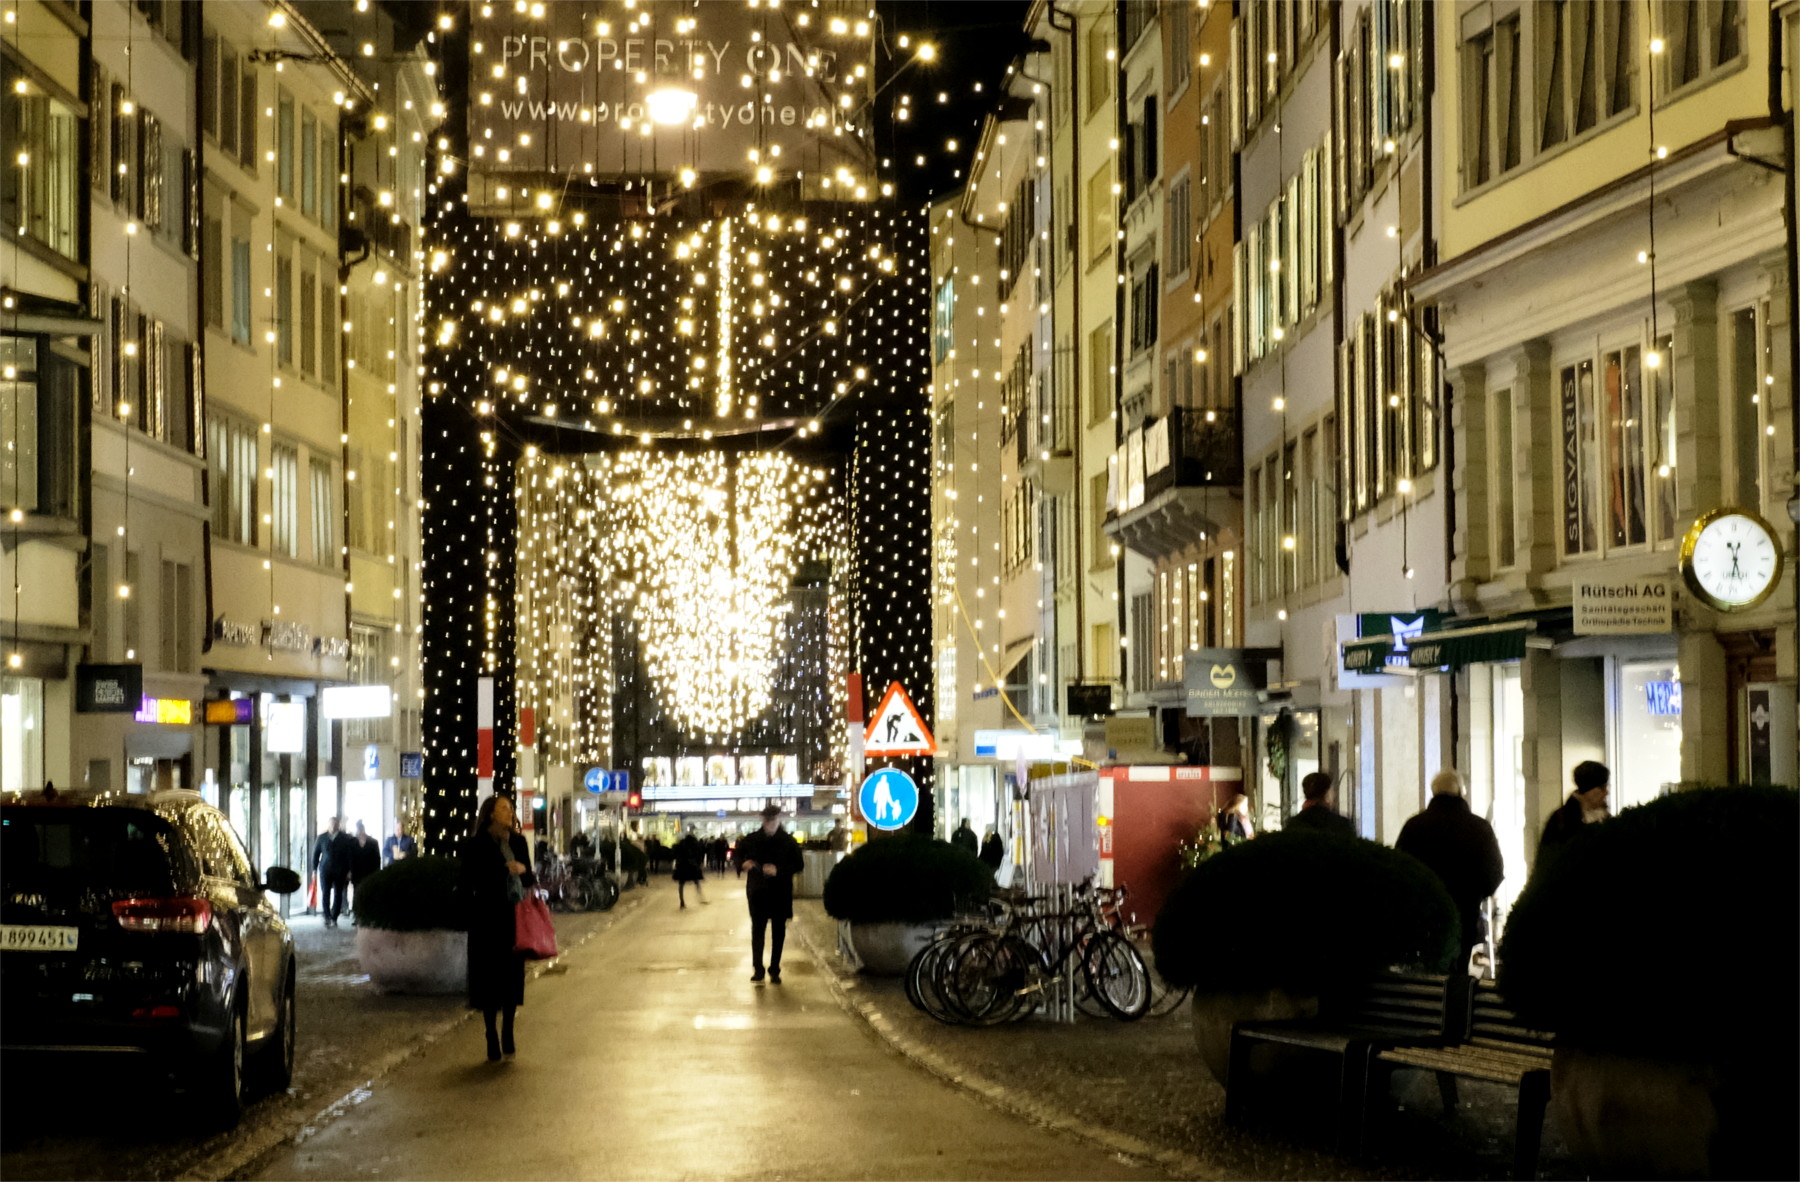 Christmas in Zurich